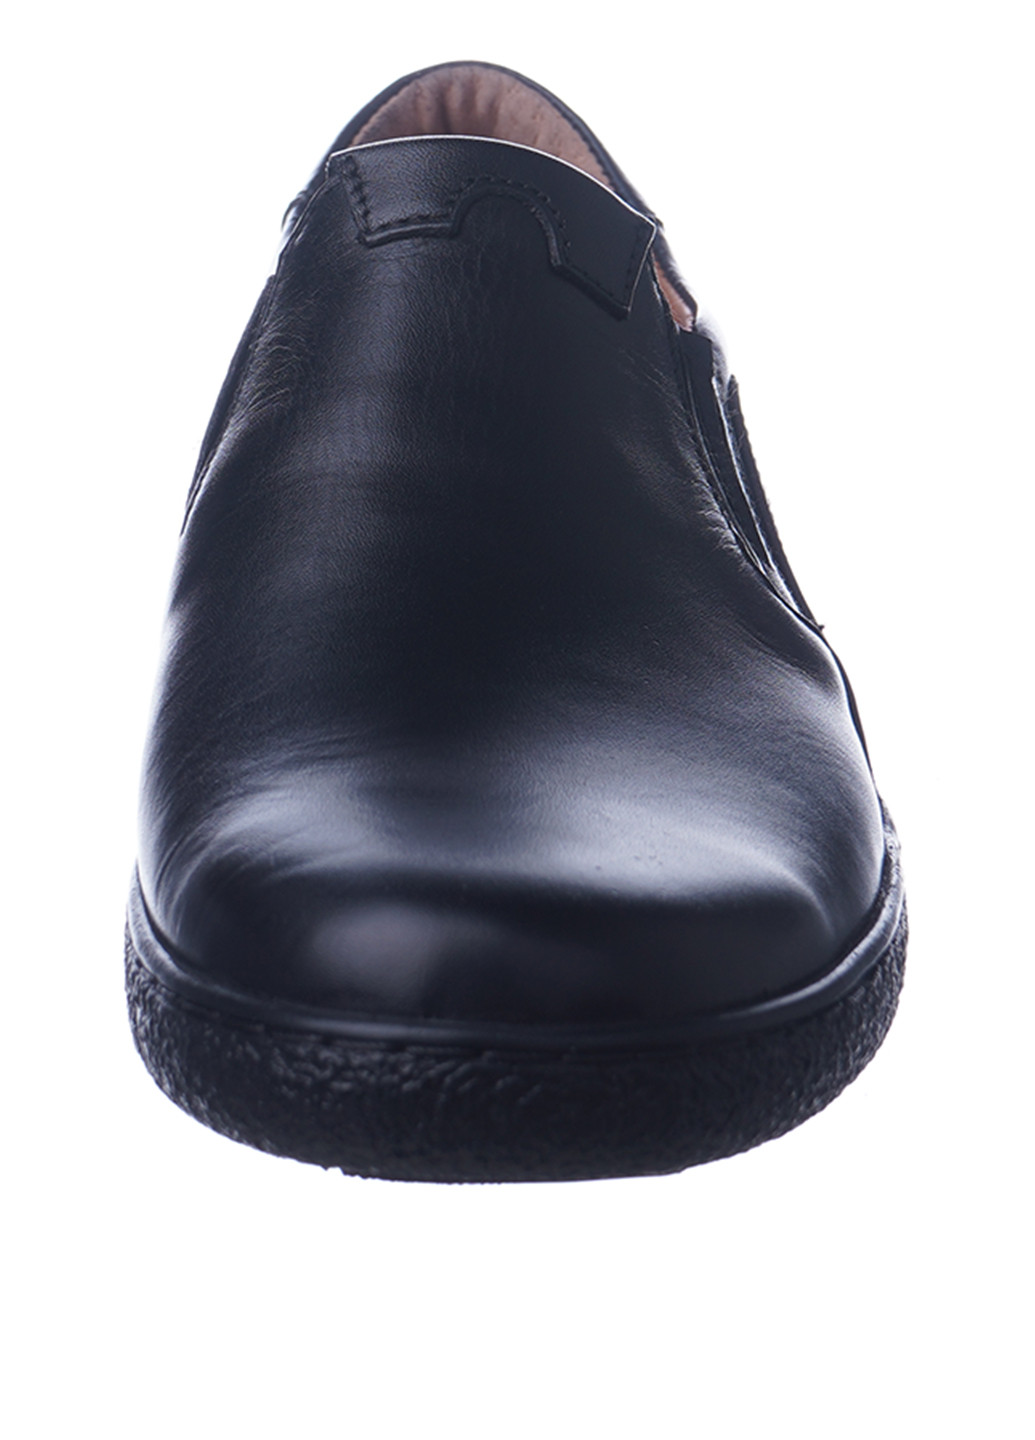 Черные туфли без шнурков Cliford